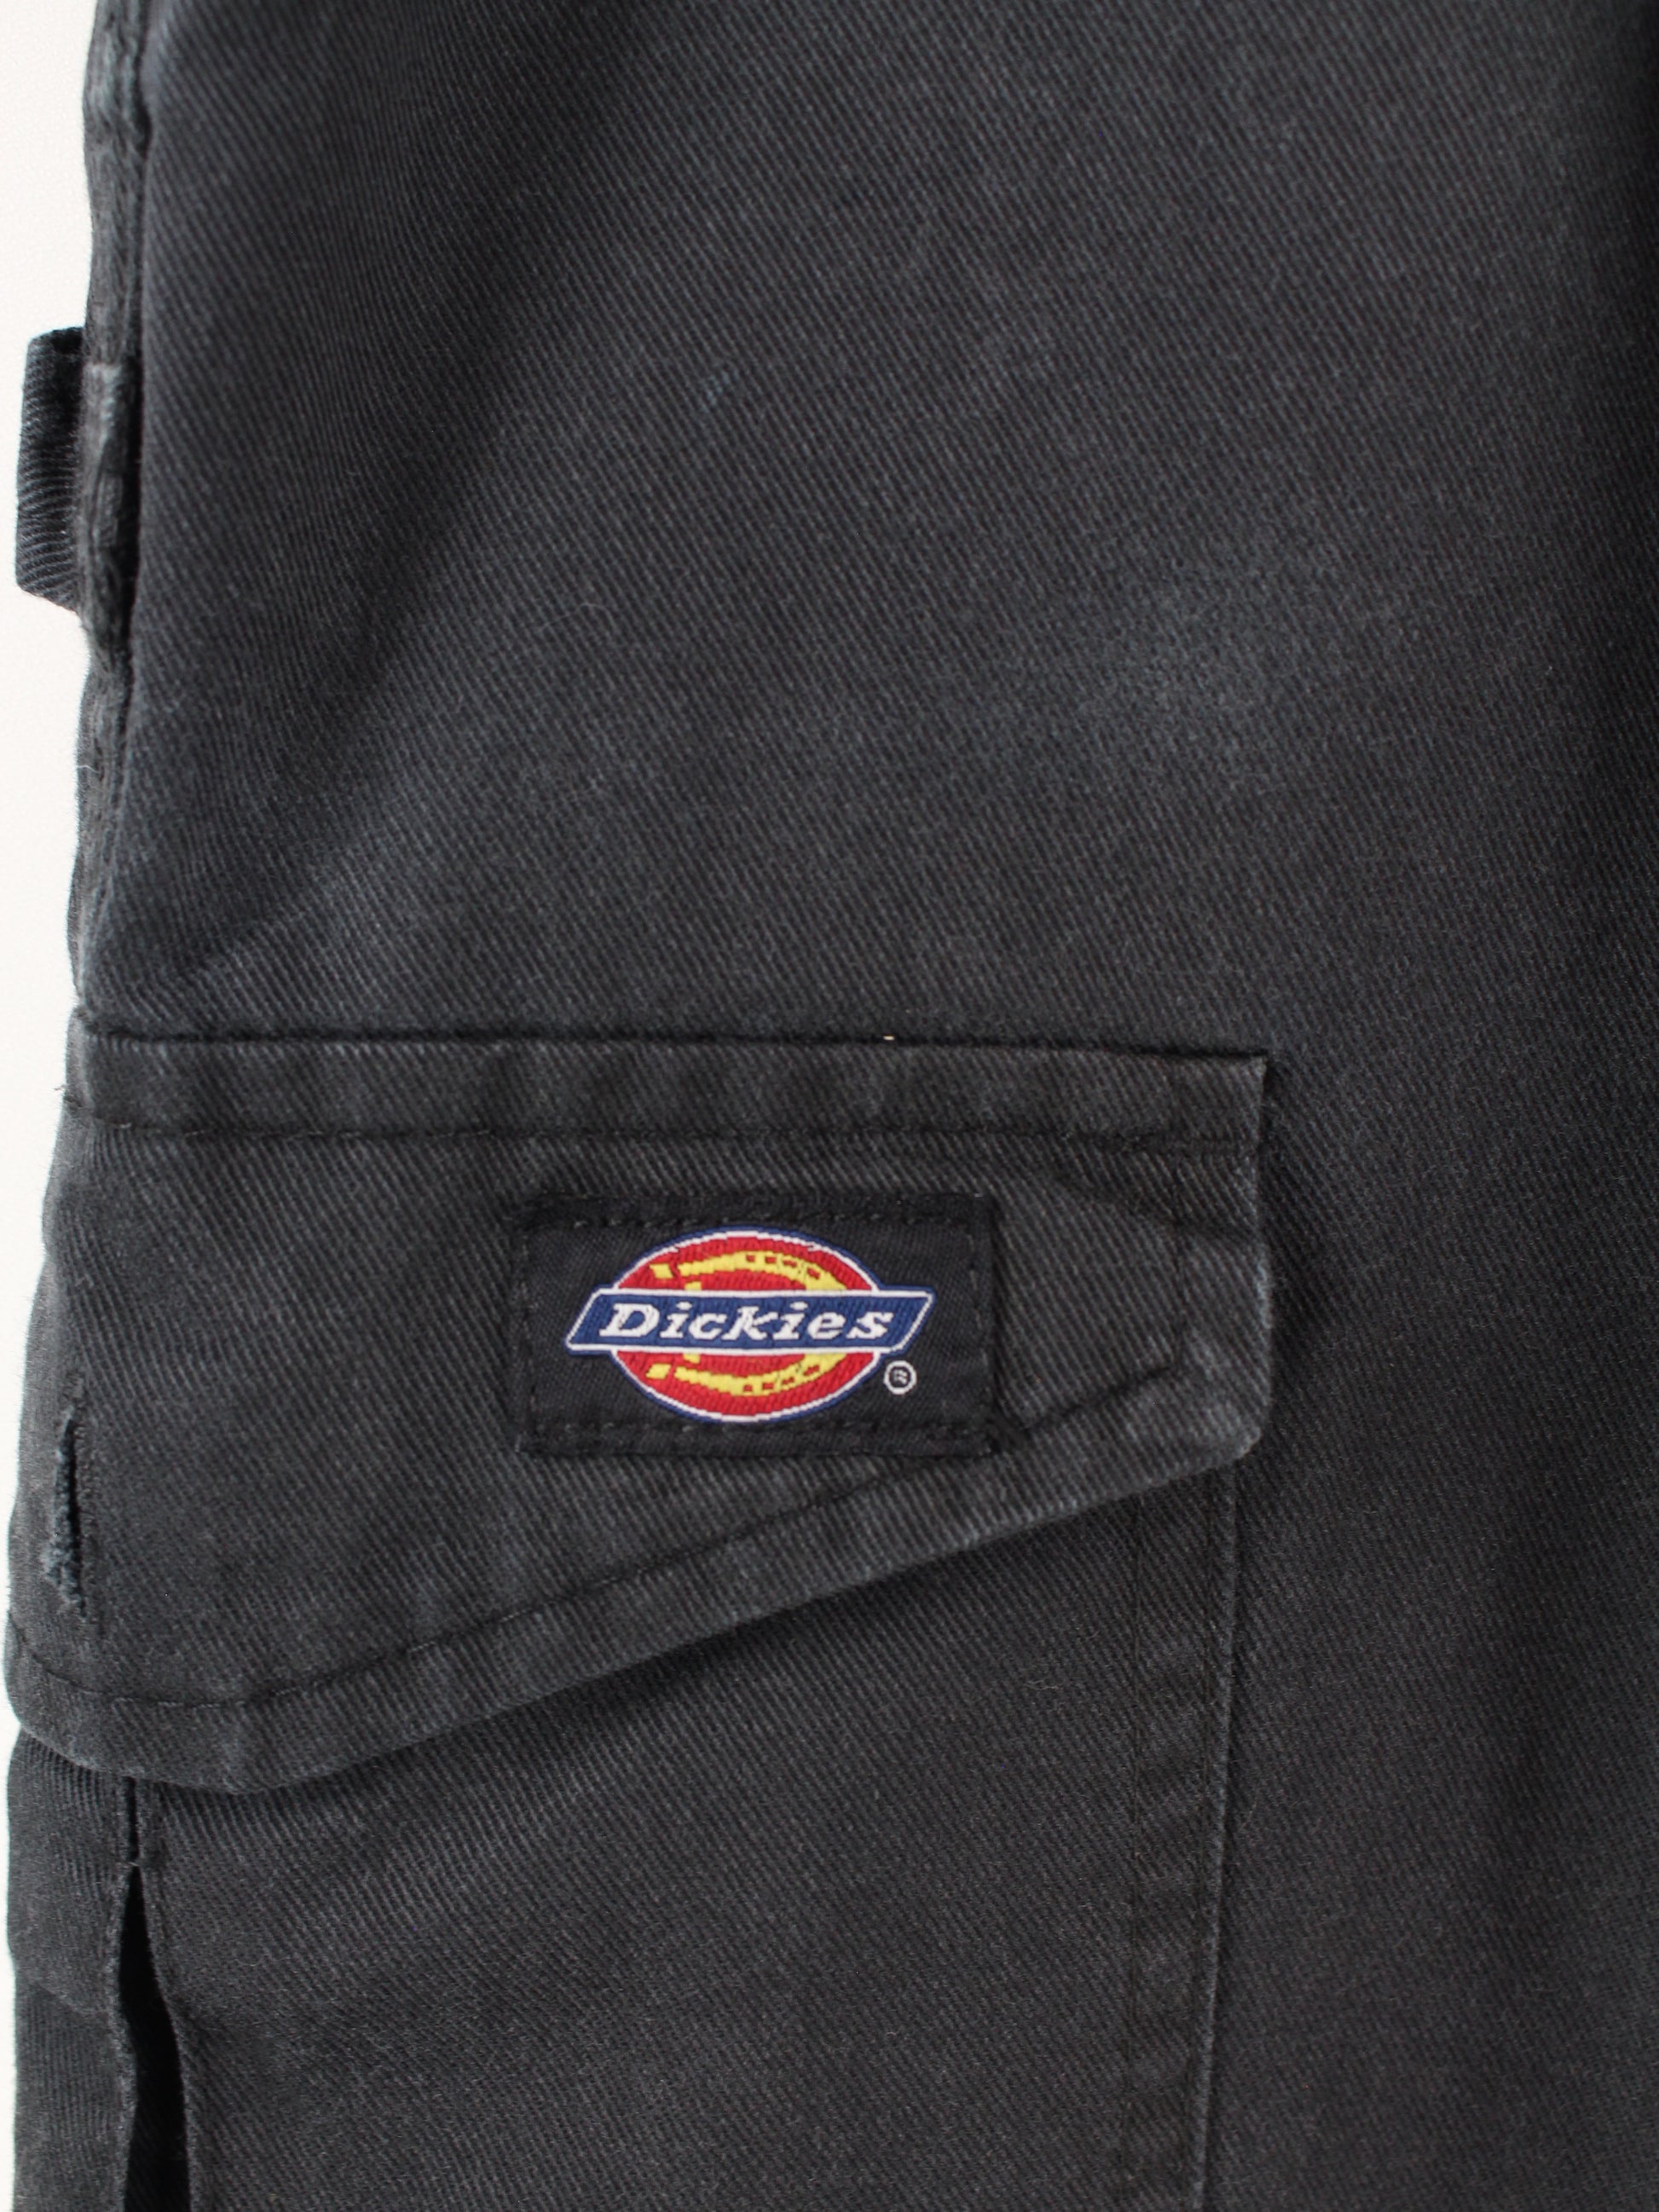 Work Peeces Trousers Dickies Black – XL